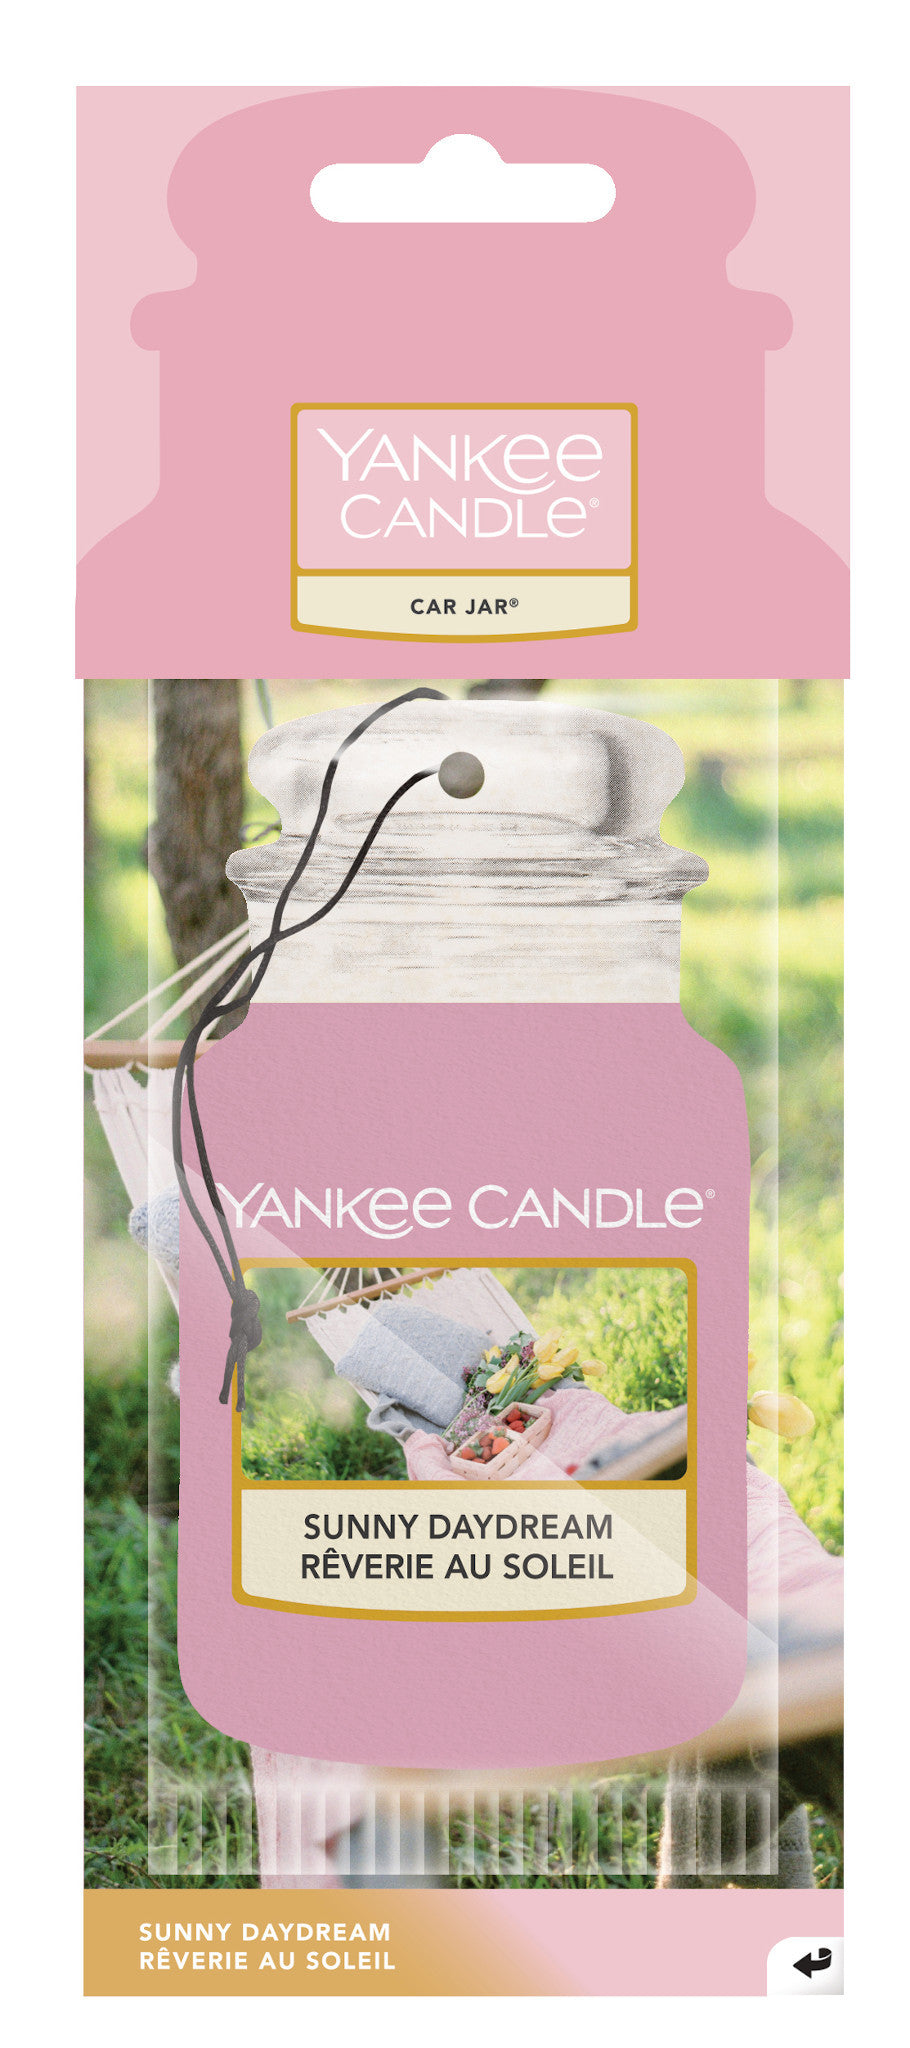 Yankee Candle - Car Jar Sunny Daydream ->